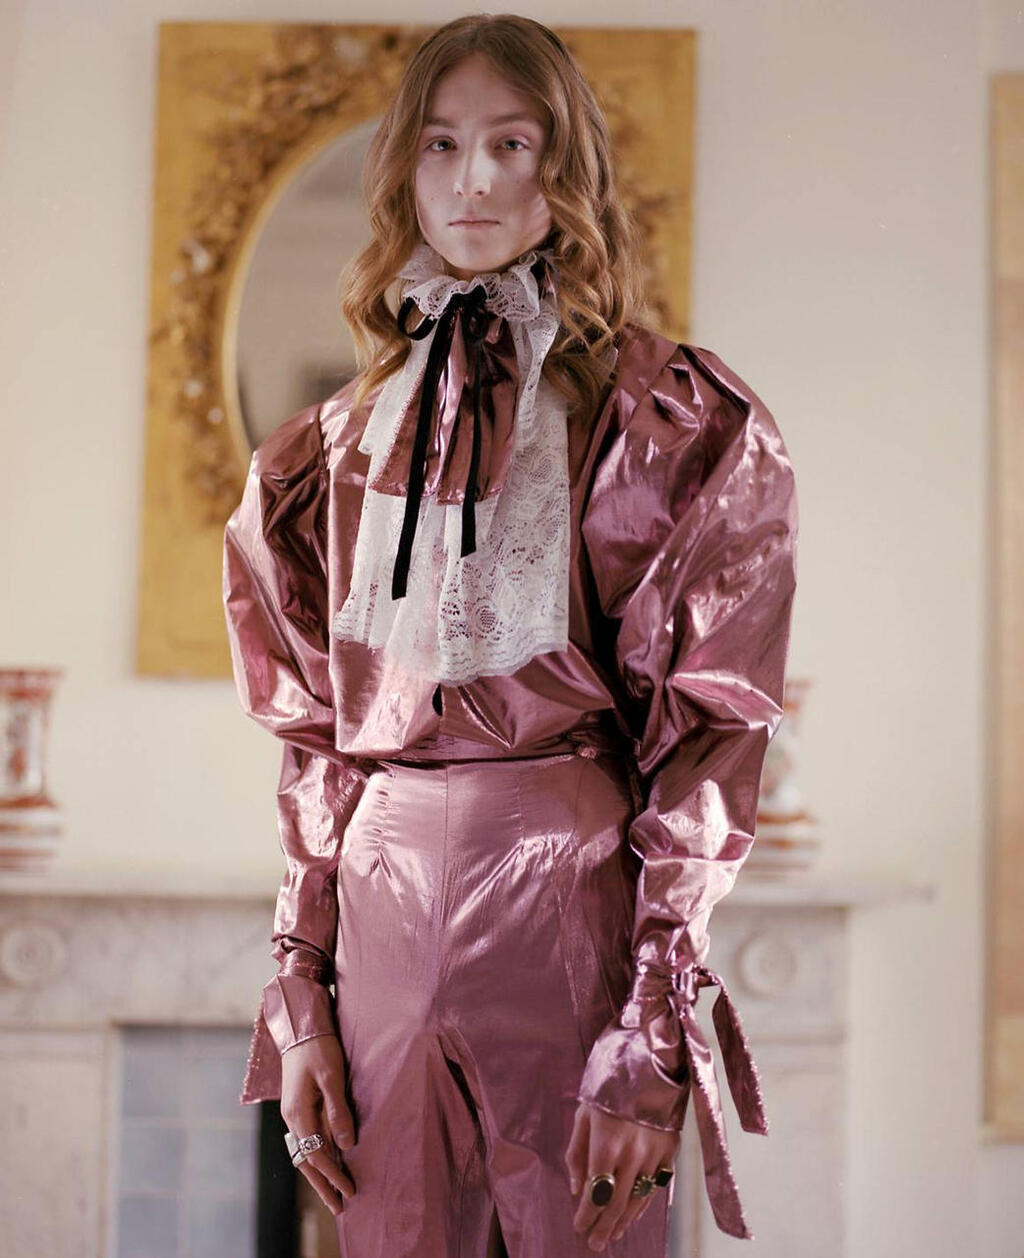 פנאי   האריס ריד לבוש בבגד בעיצובו בדיוקן שיוצג במוזיאון ויקטוריה ואלברט